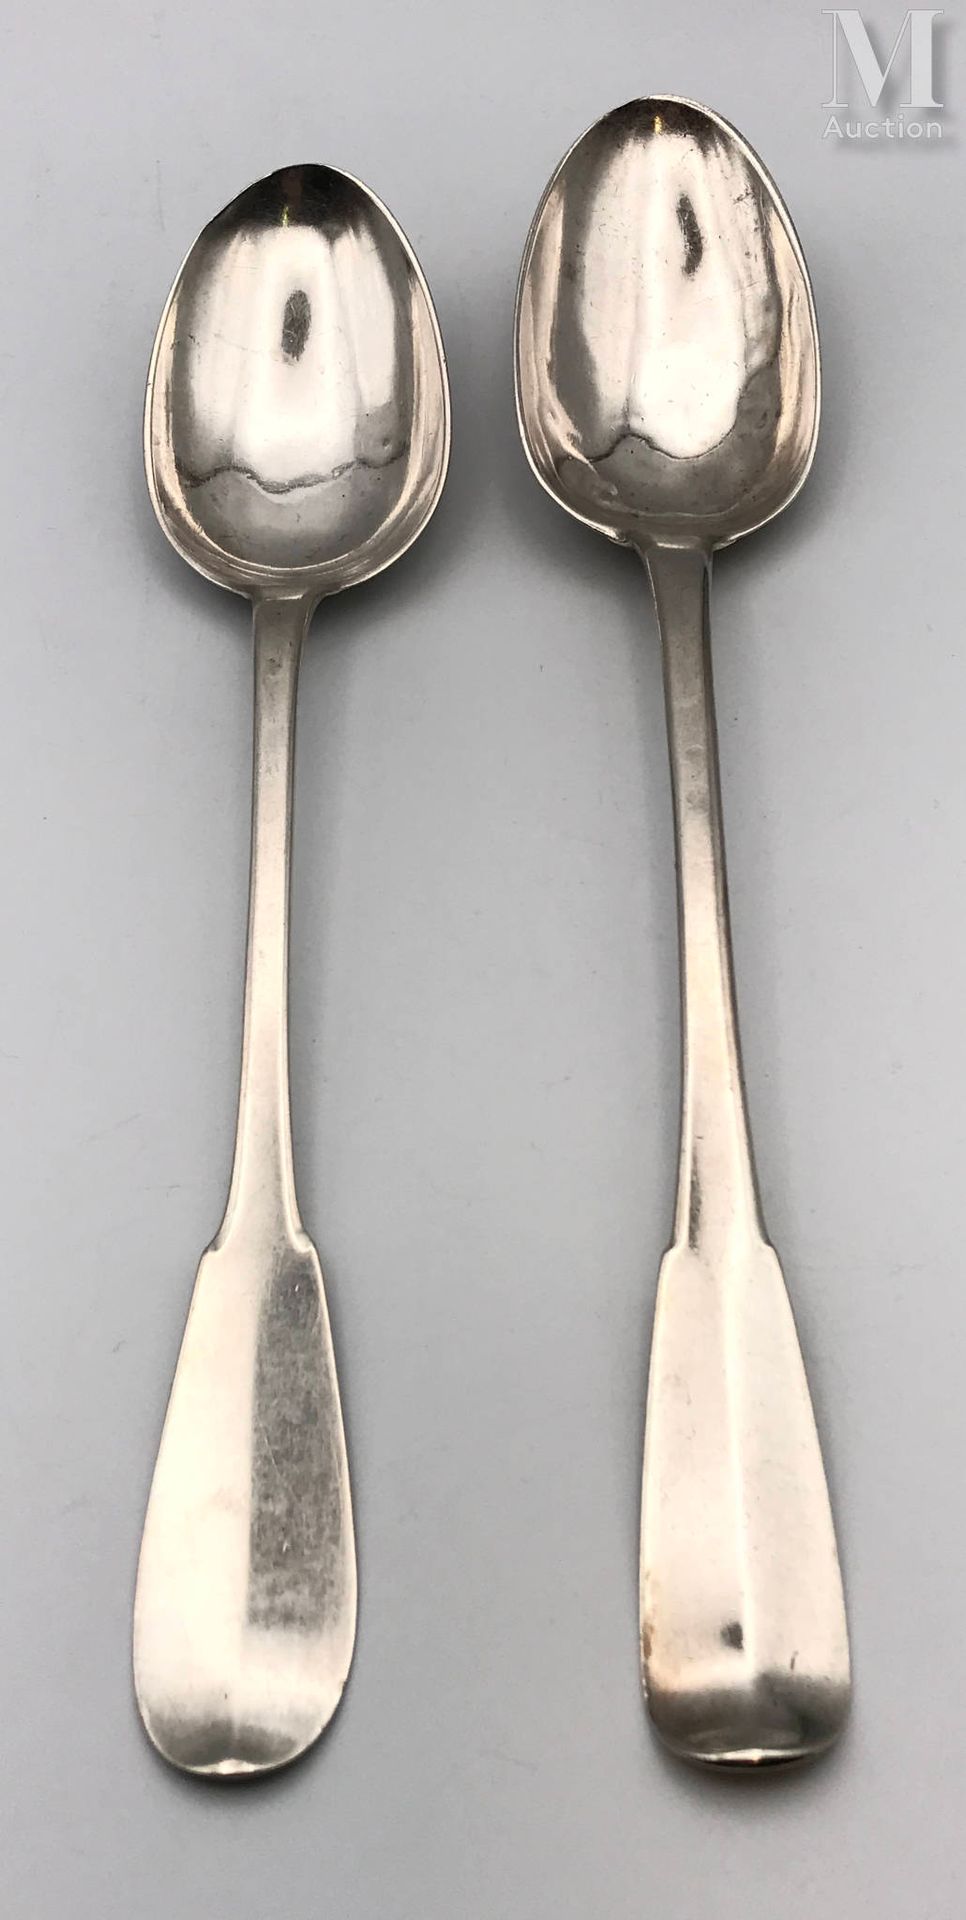 Deux cuillères à ragoût 银色，单层模型

18世纪

金匠的标志

重量：250克